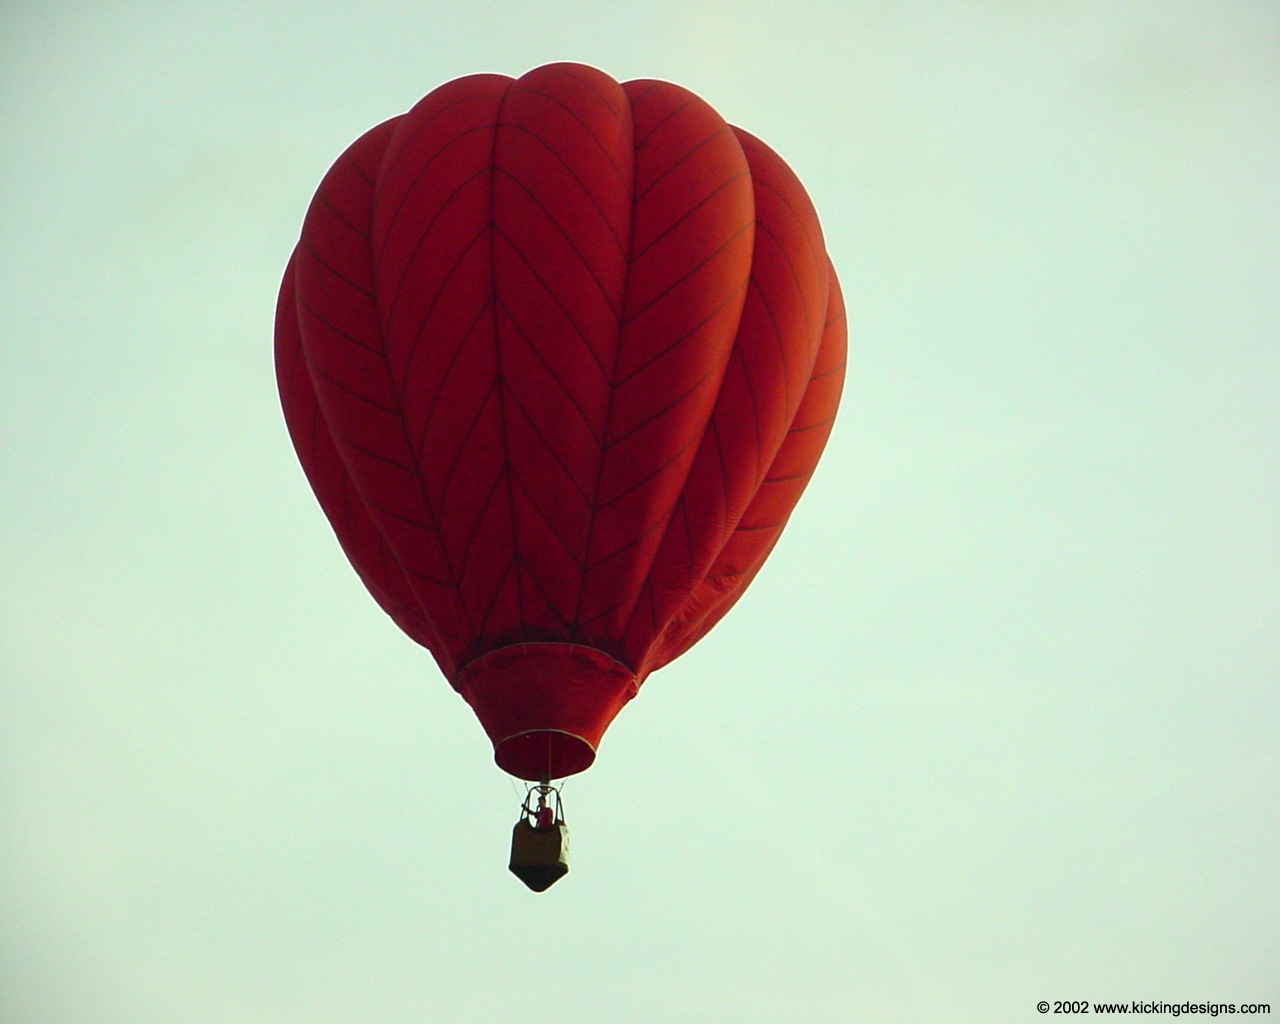 Red Air Balloon - HD Wallpaper 